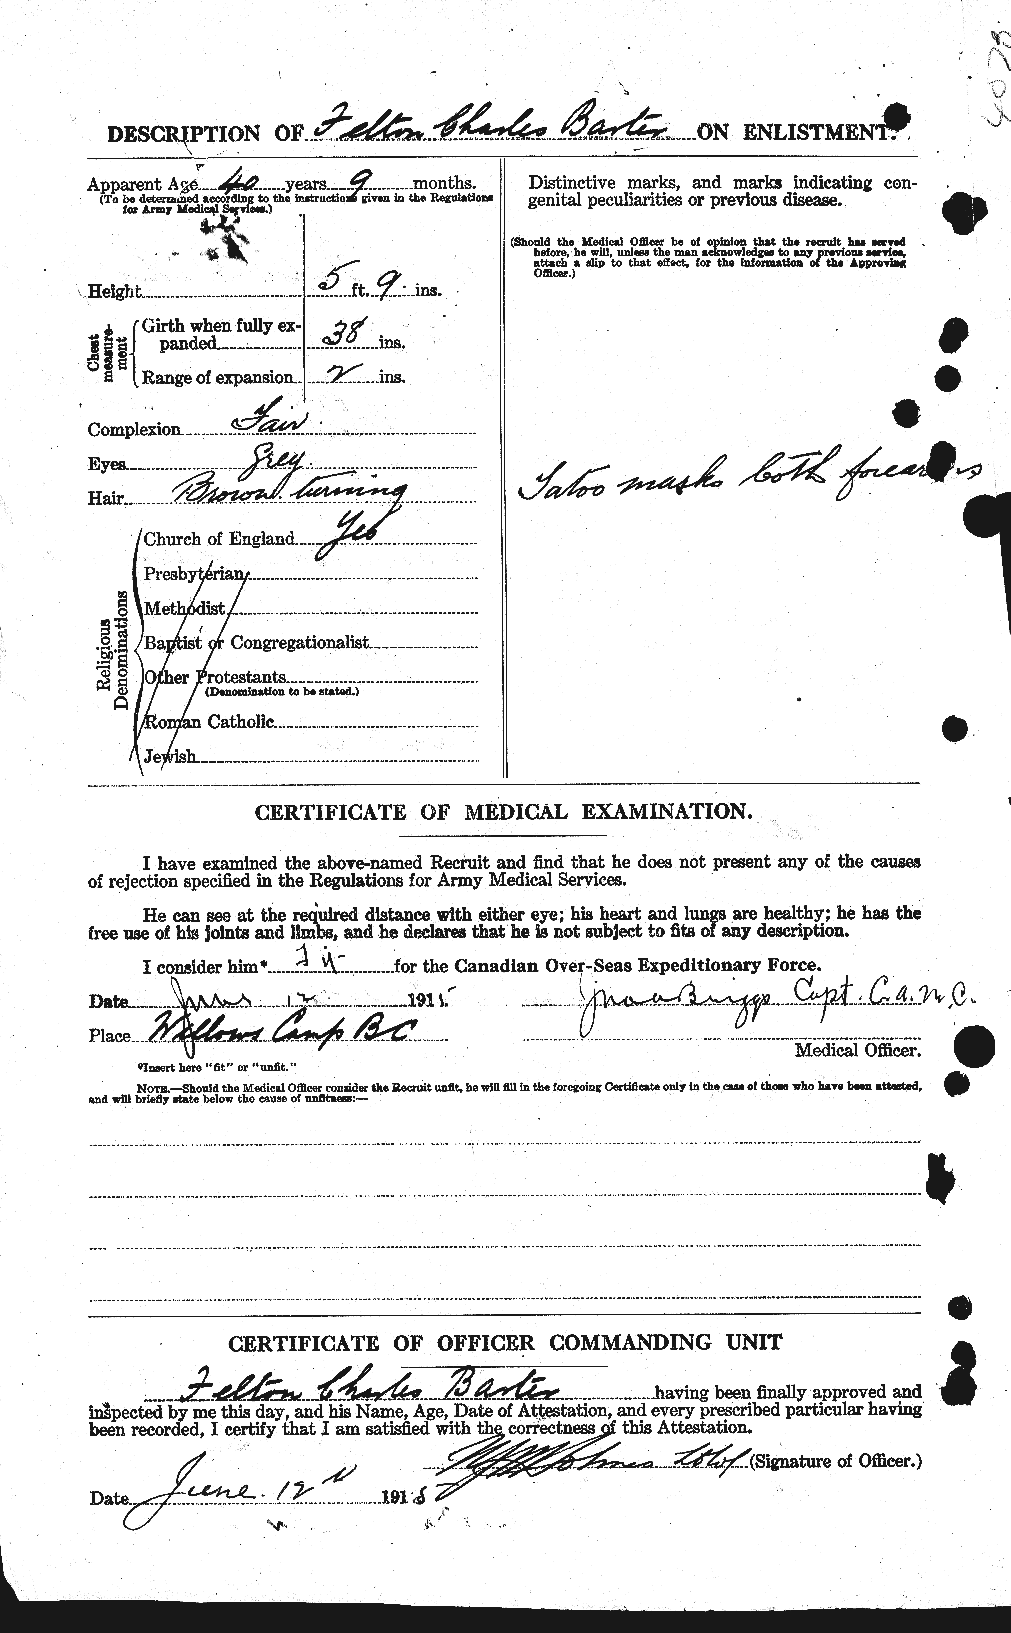 Dossiers du Personnel de la Première Guerre mondiale - CEC 227696b